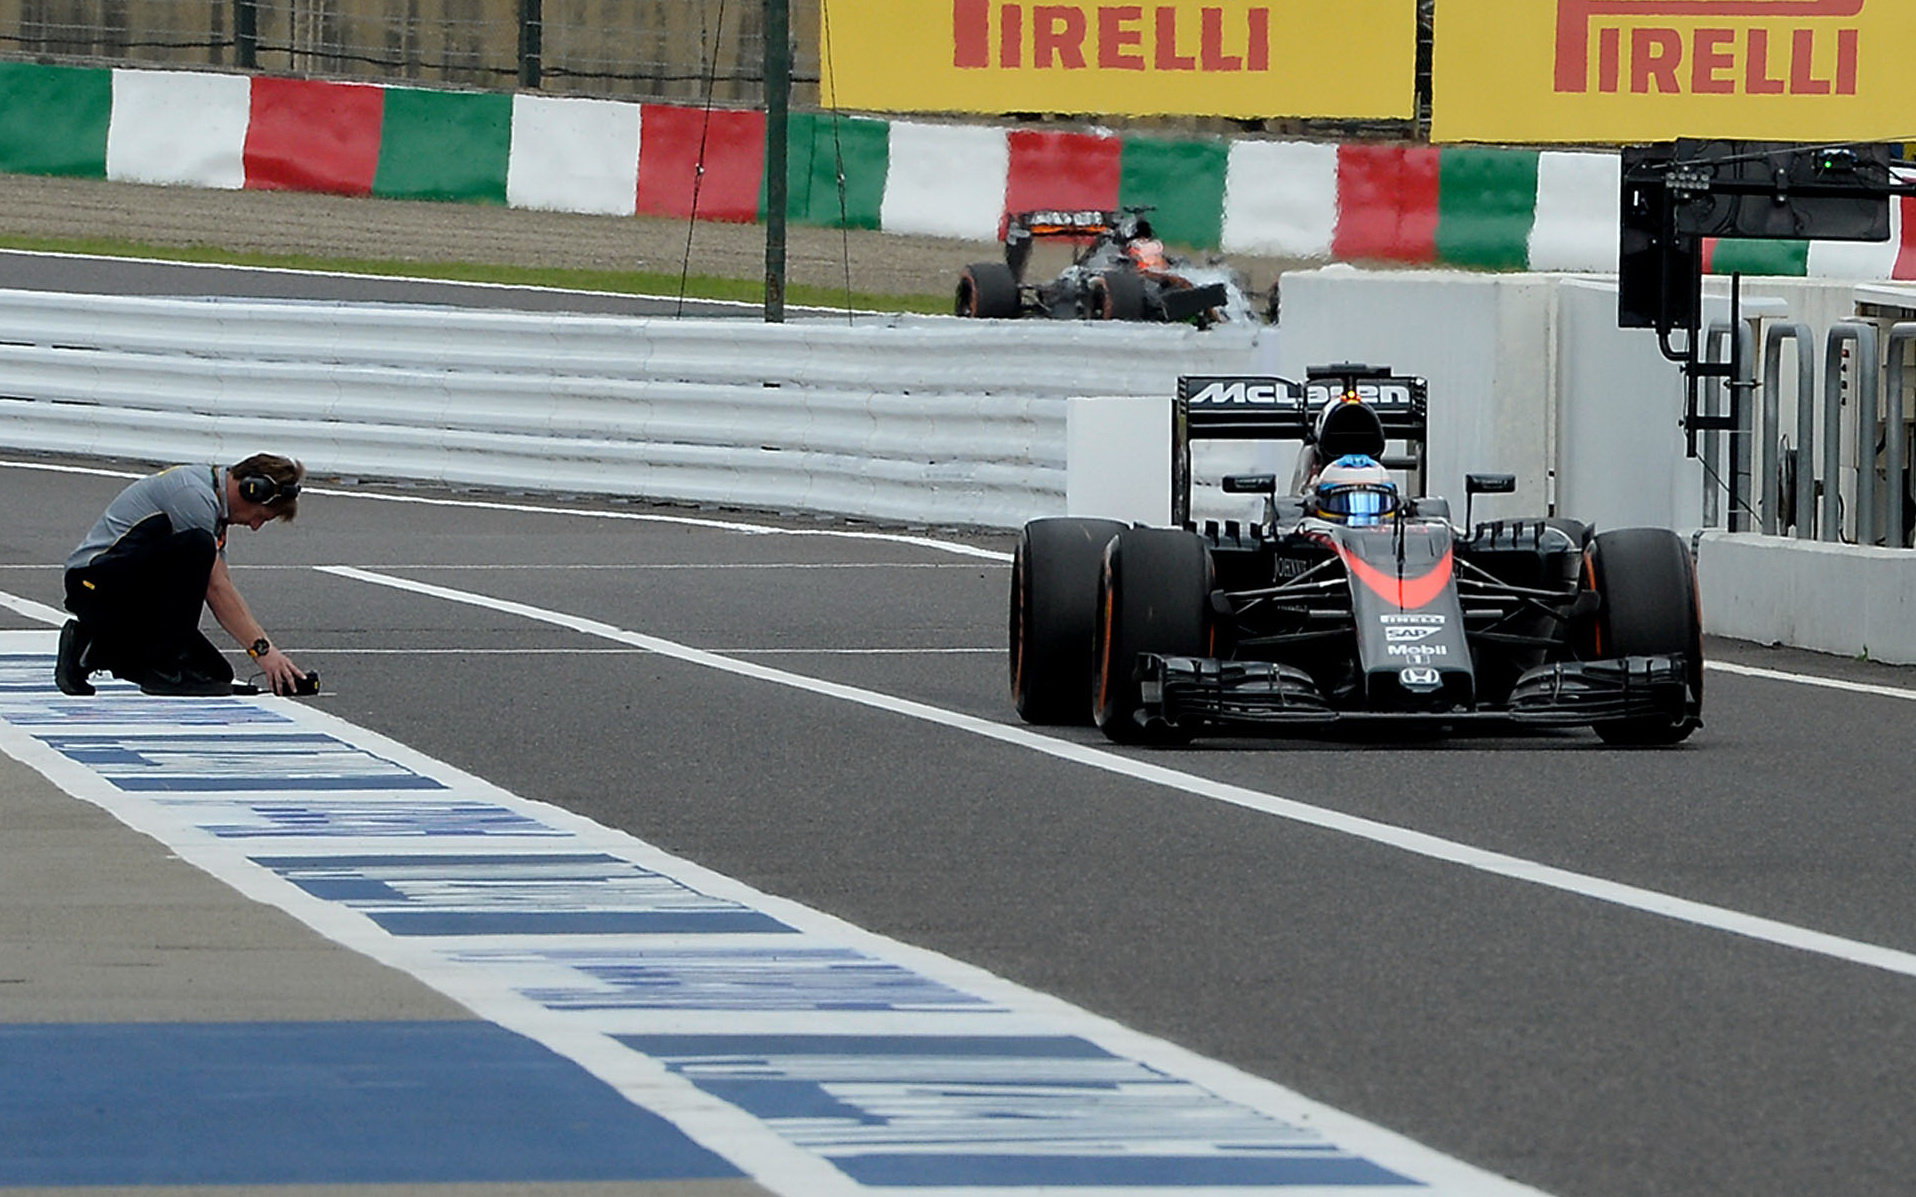 Fernando Alonso vjizdi do pitlane, GP Japonska (Suzuka)